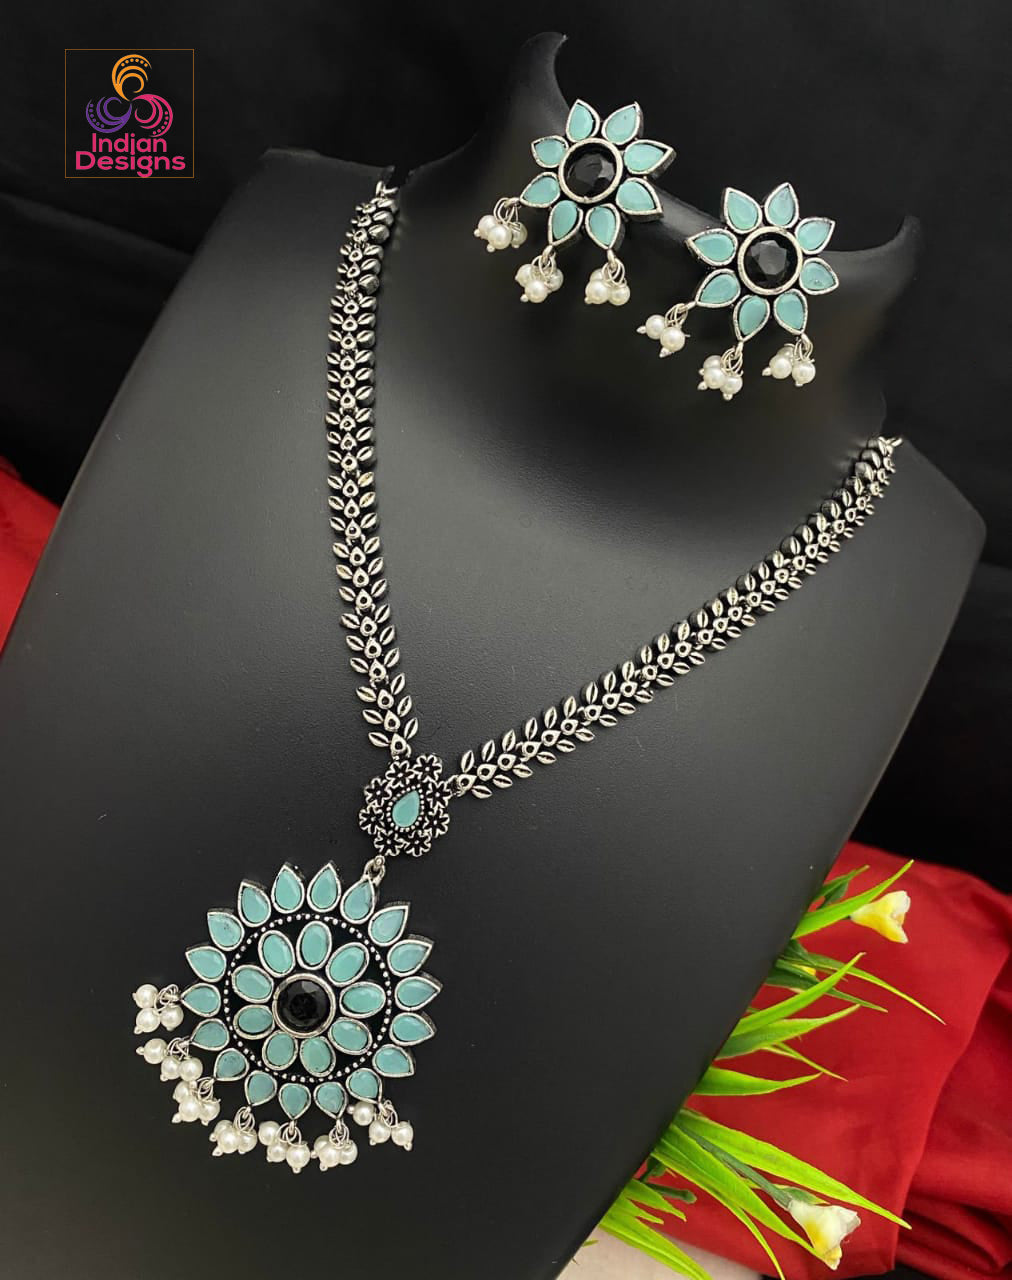 Afghani Oxidised German Silver Bib Necklace Earrings Set Women Girls  Jewelry Set